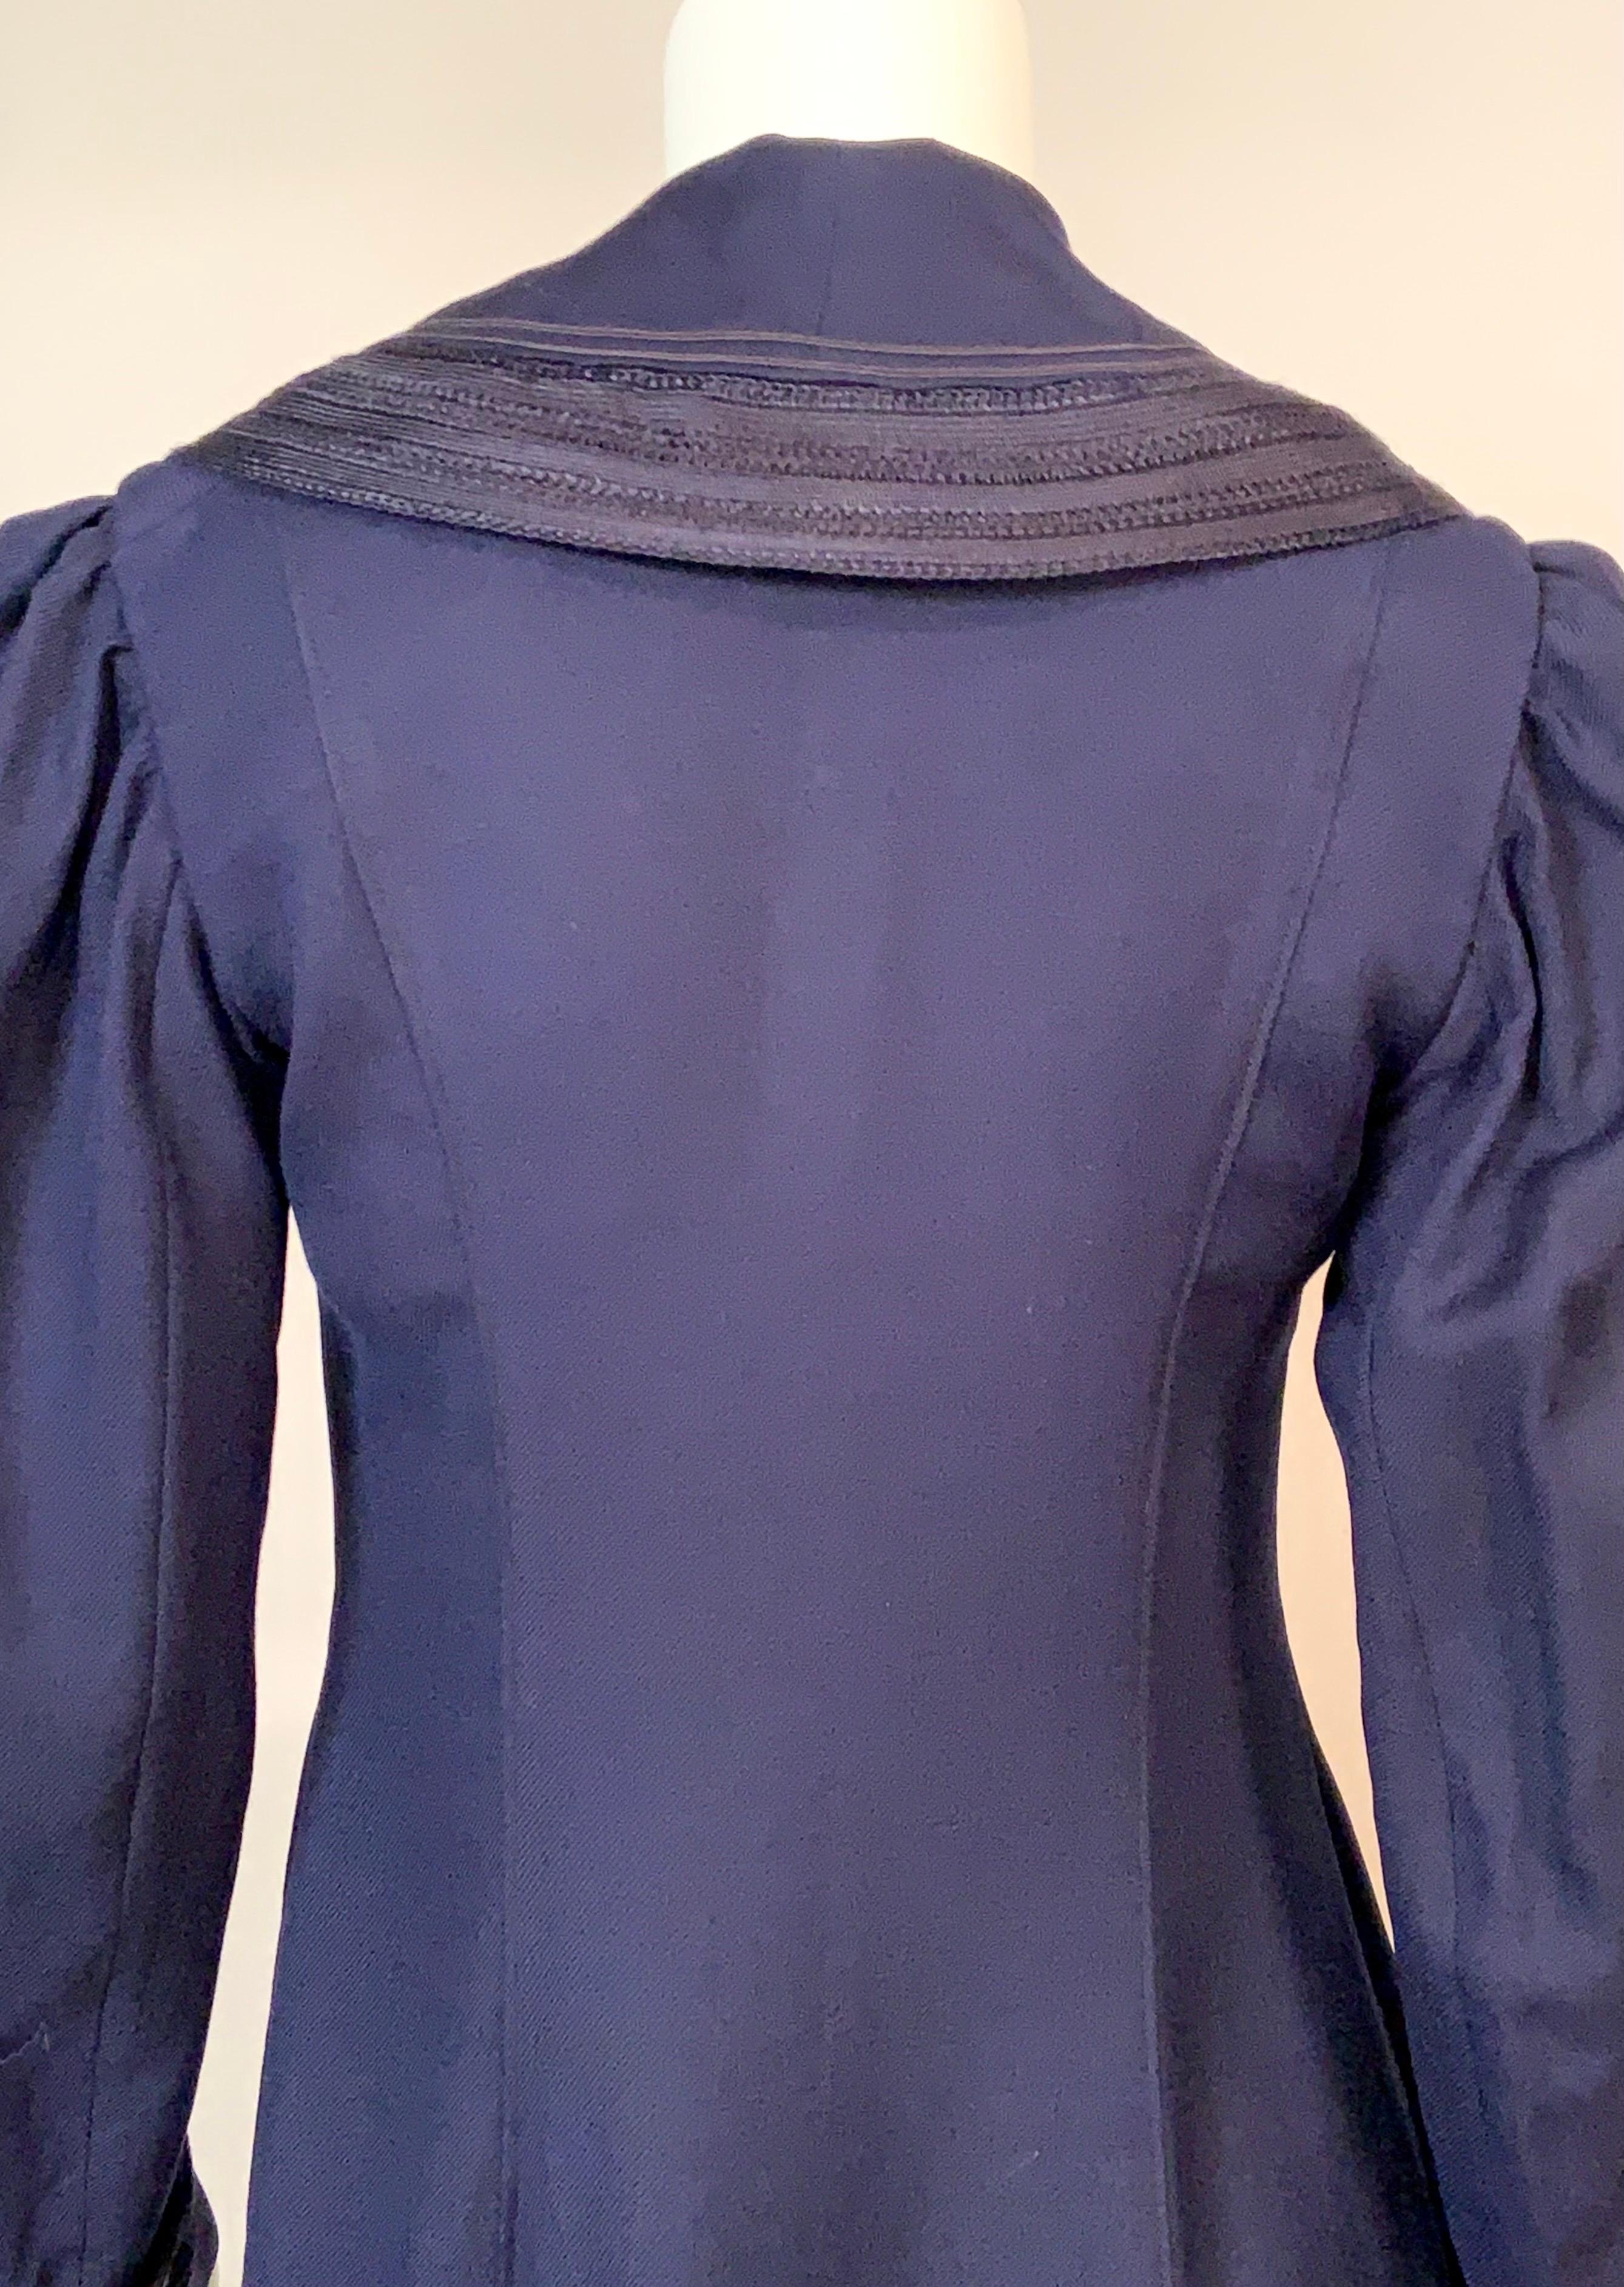 Edwardian Navy Blue Wool Coat with Braid Trim 9